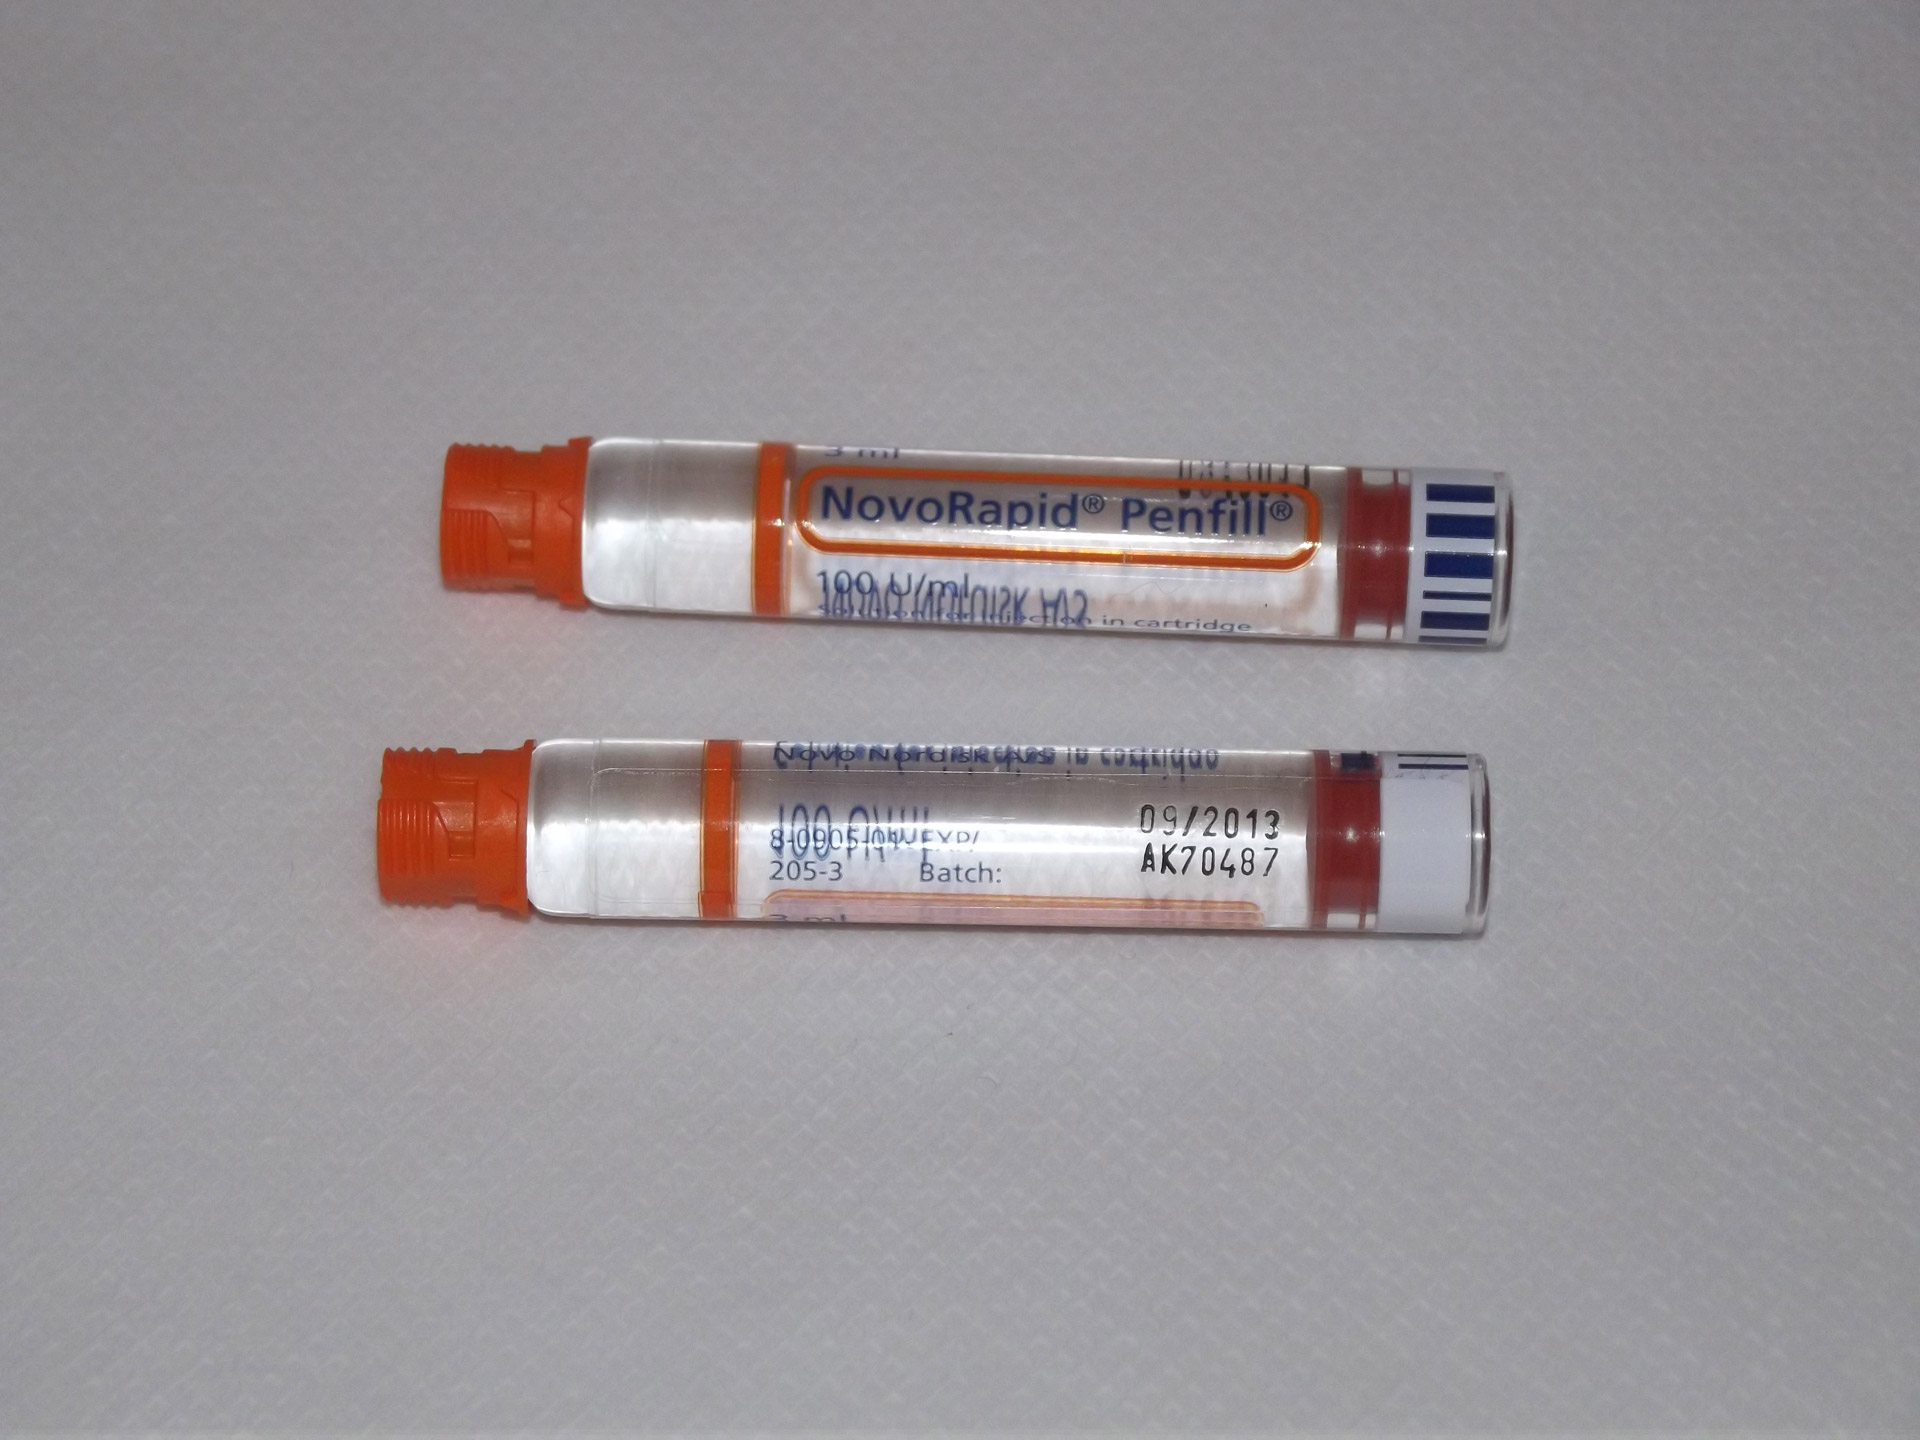 insulin novorapid refill free photo